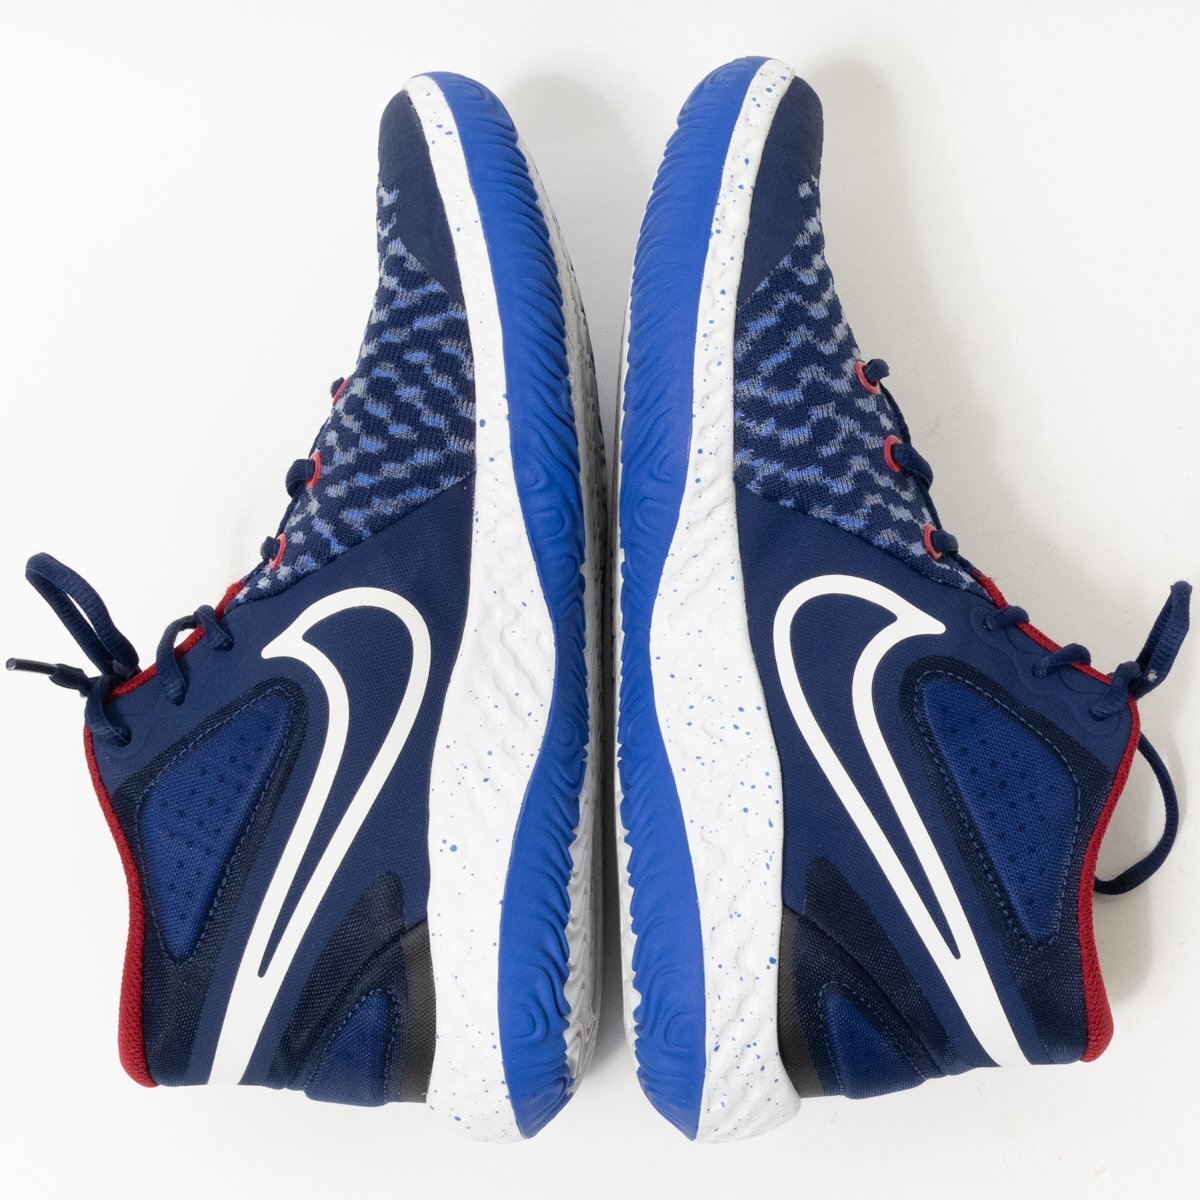 [1 иен старт ]Nike Nike CK2089402 KD tray 5 VIII EP баскетбол обувь спортивные туфли обувь голубой 27cm мужской синтетическое волокно 